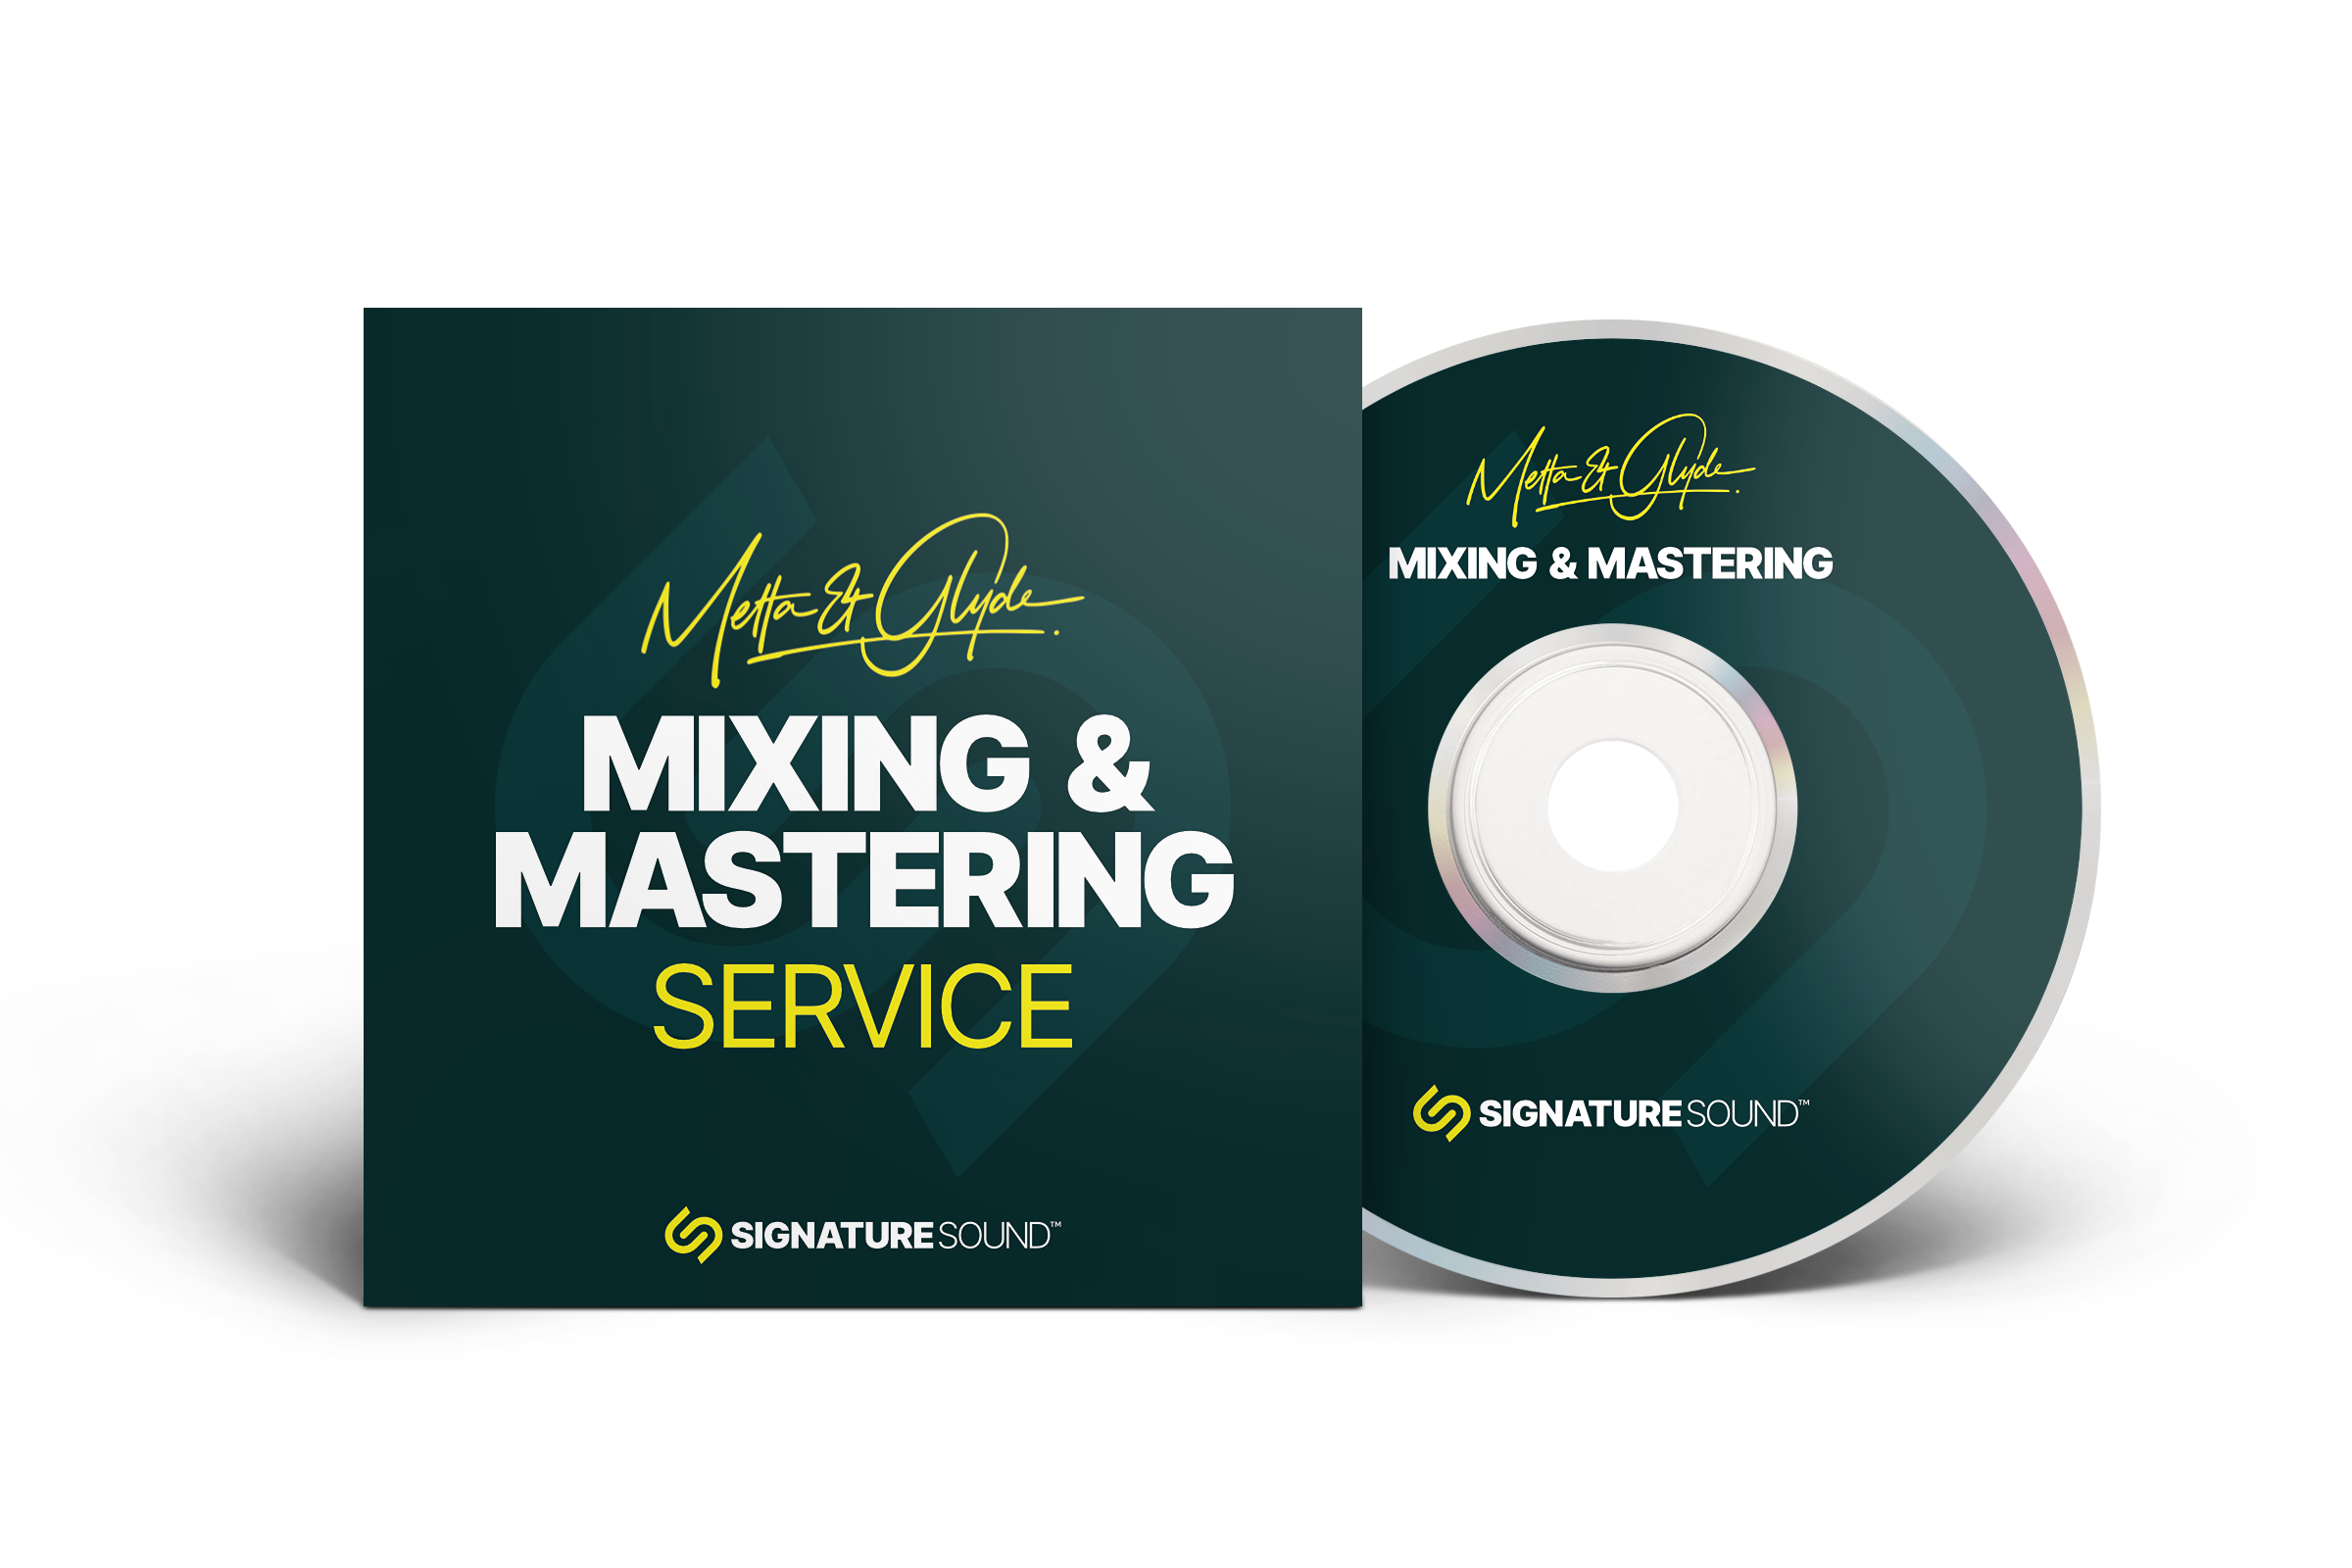 MAG Mixing & Mastering